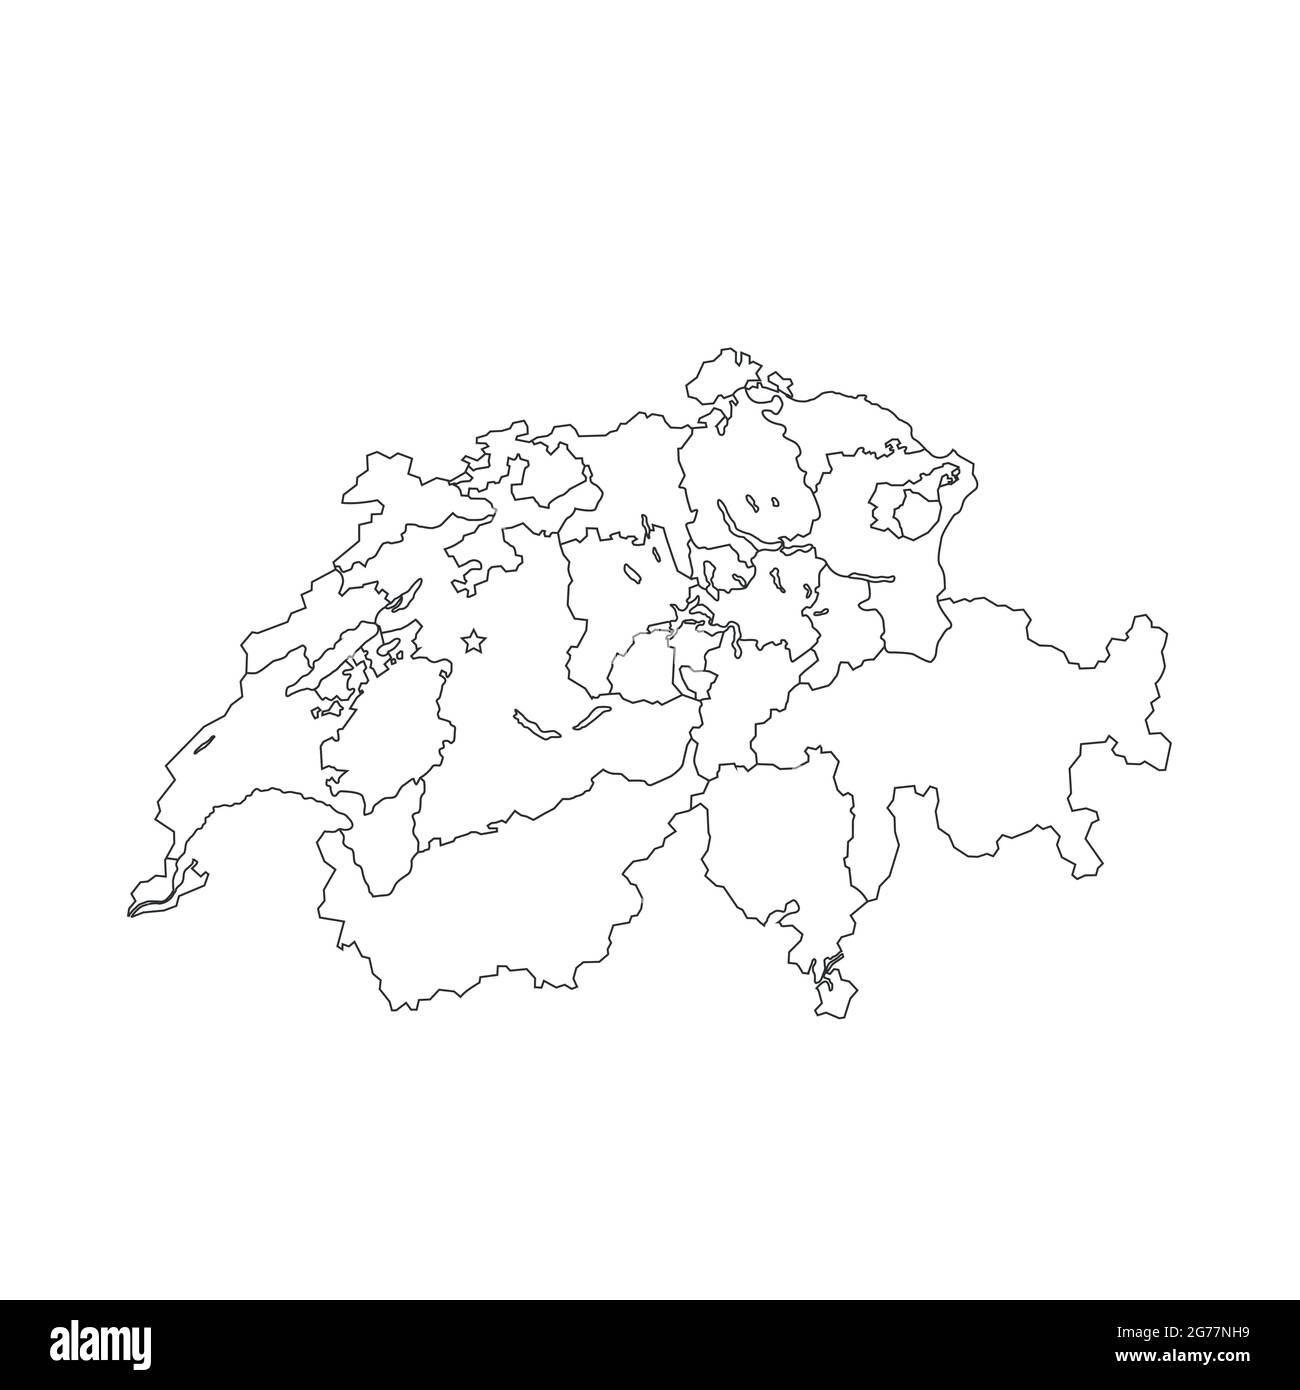 Illustrazione vettoriale della mappa svizzera. Vettore stock isolato Illustrazione Vettoriale